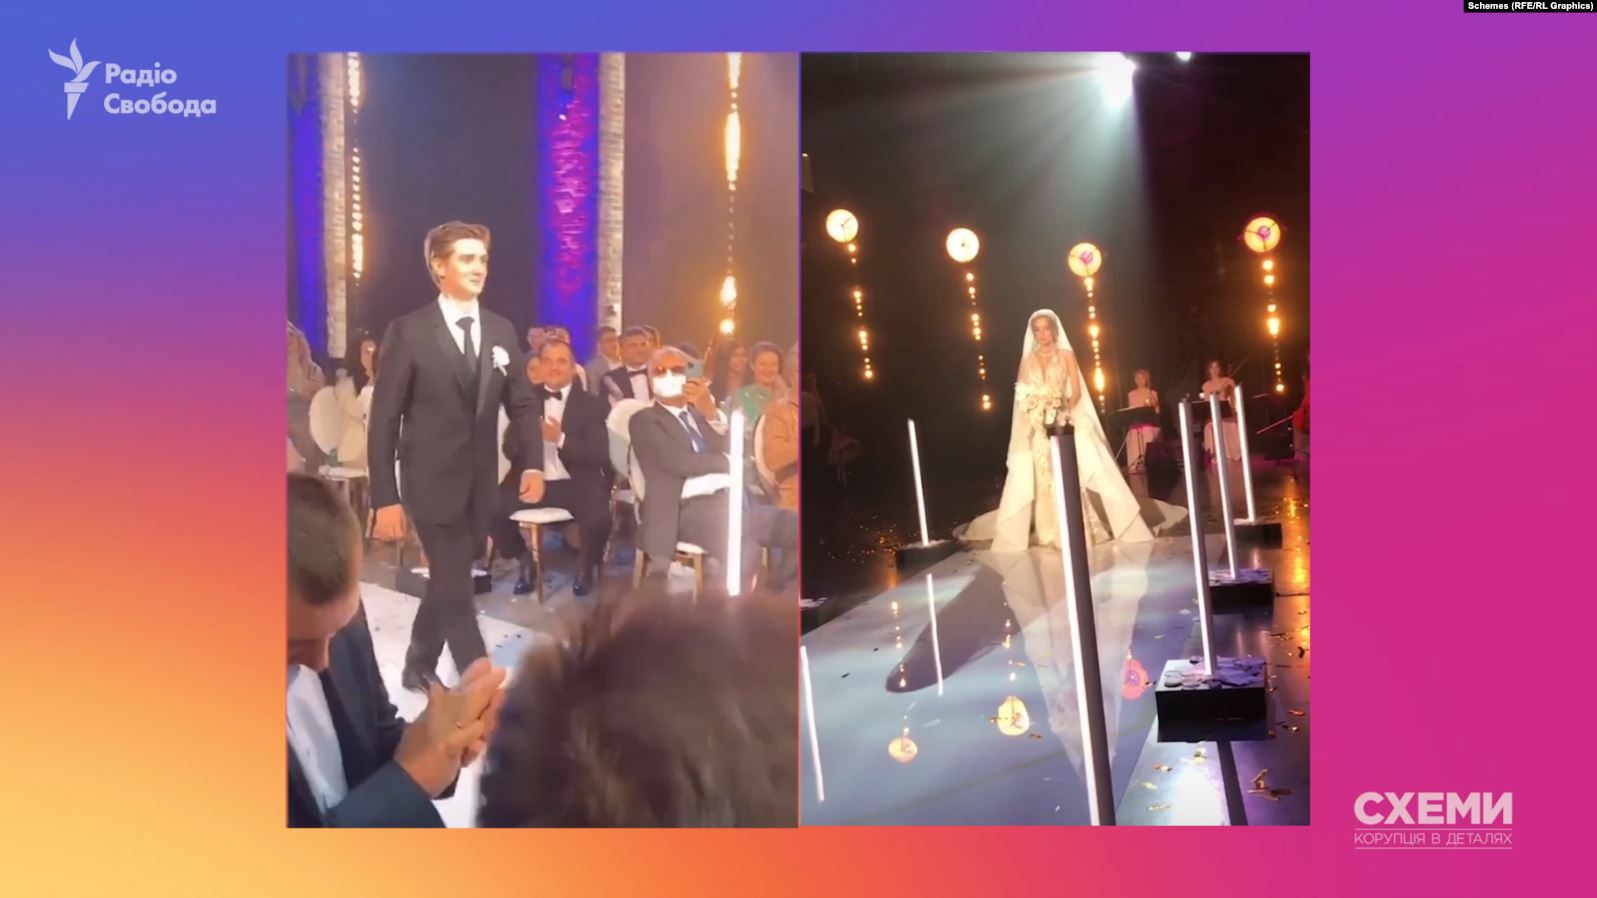 Появилось видео с помпезной свадьбы сына кумы Путина: кто развлекал VIP-гостей